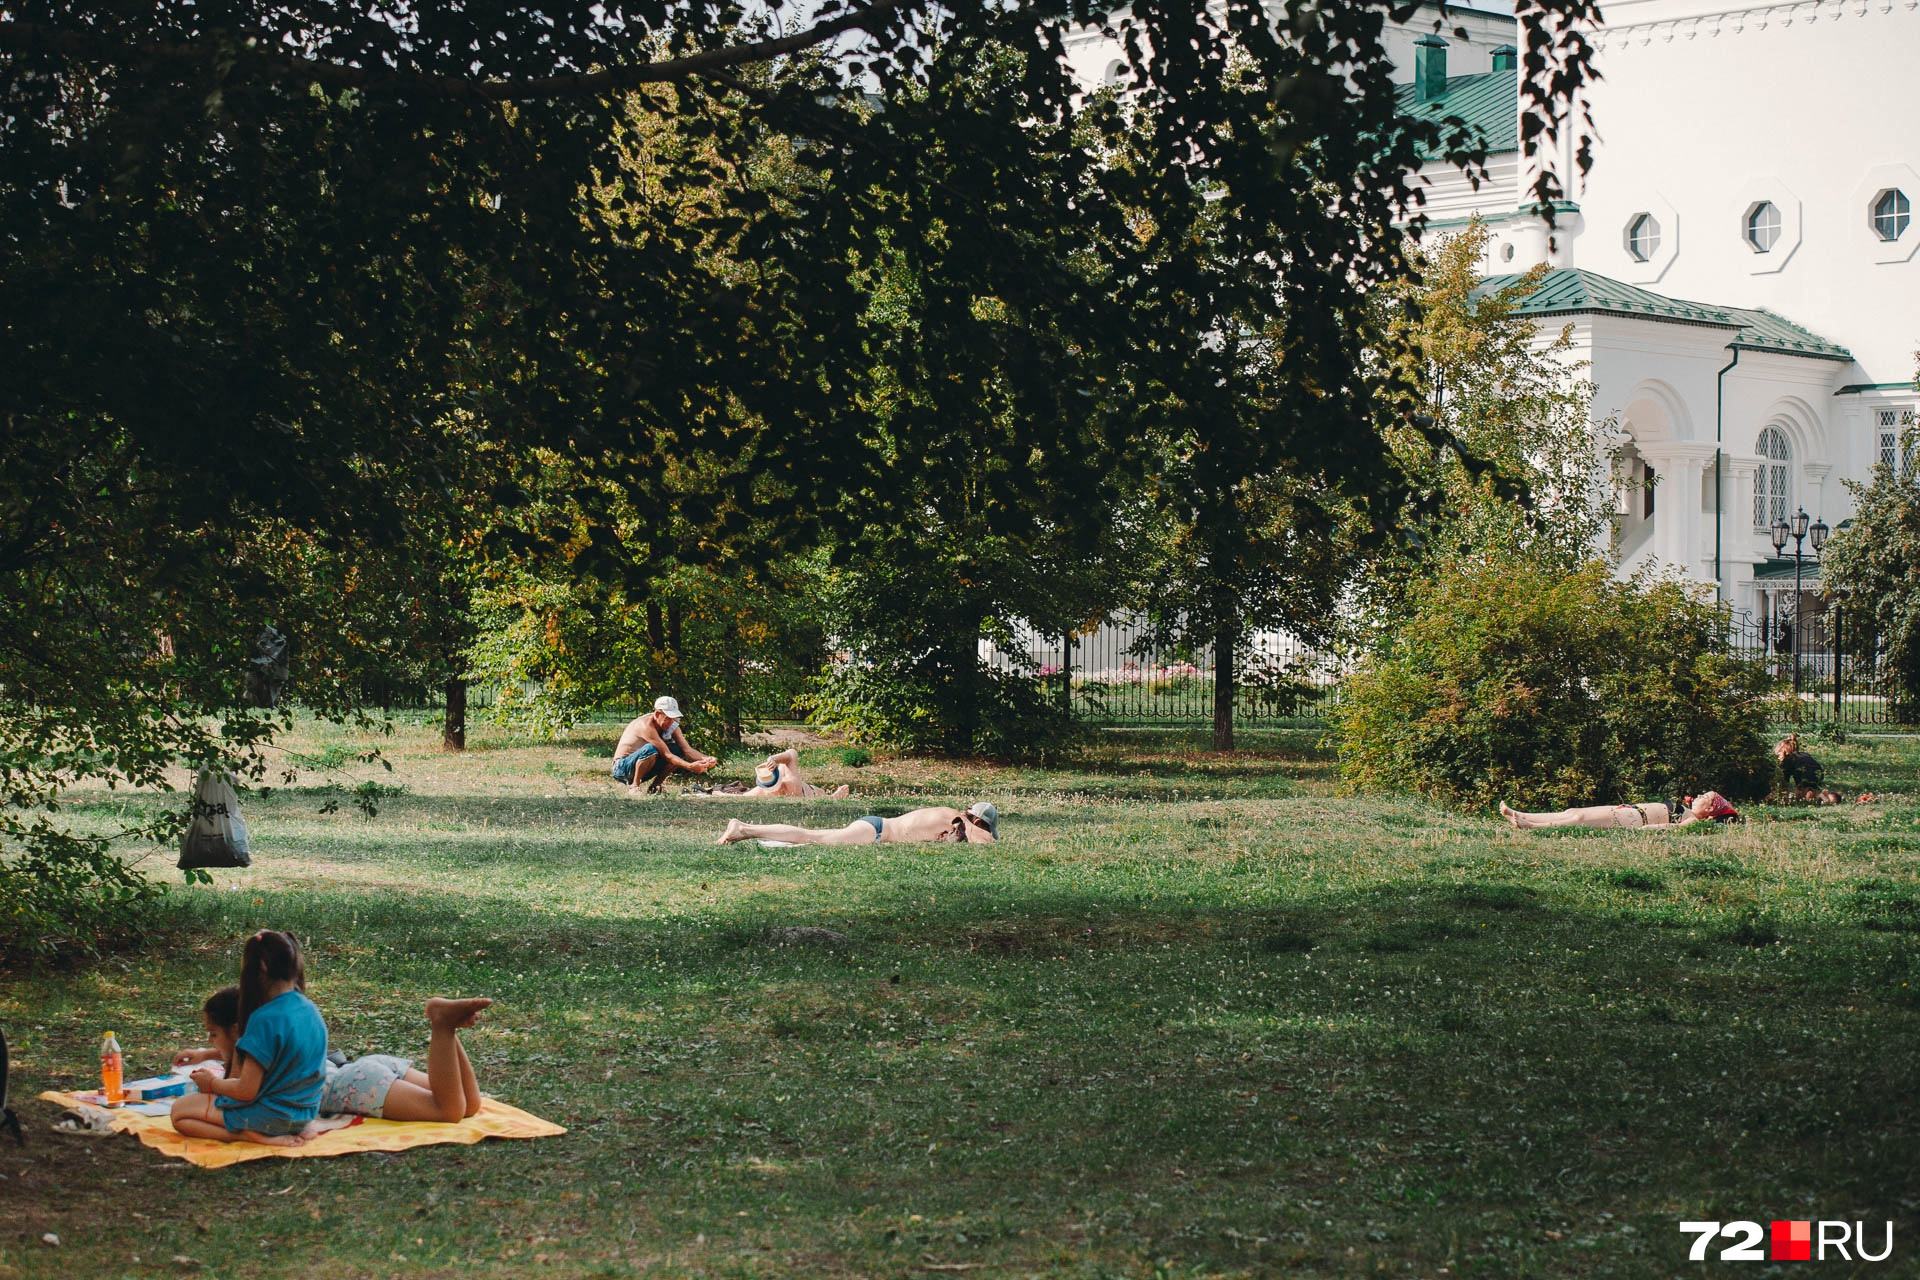 Отдыхающих на солнышке тюменцев можно встретить практически во всех парковых зонах. Это наглядное подтверждение, что людям нужны такие места, где можно прилечь на травку